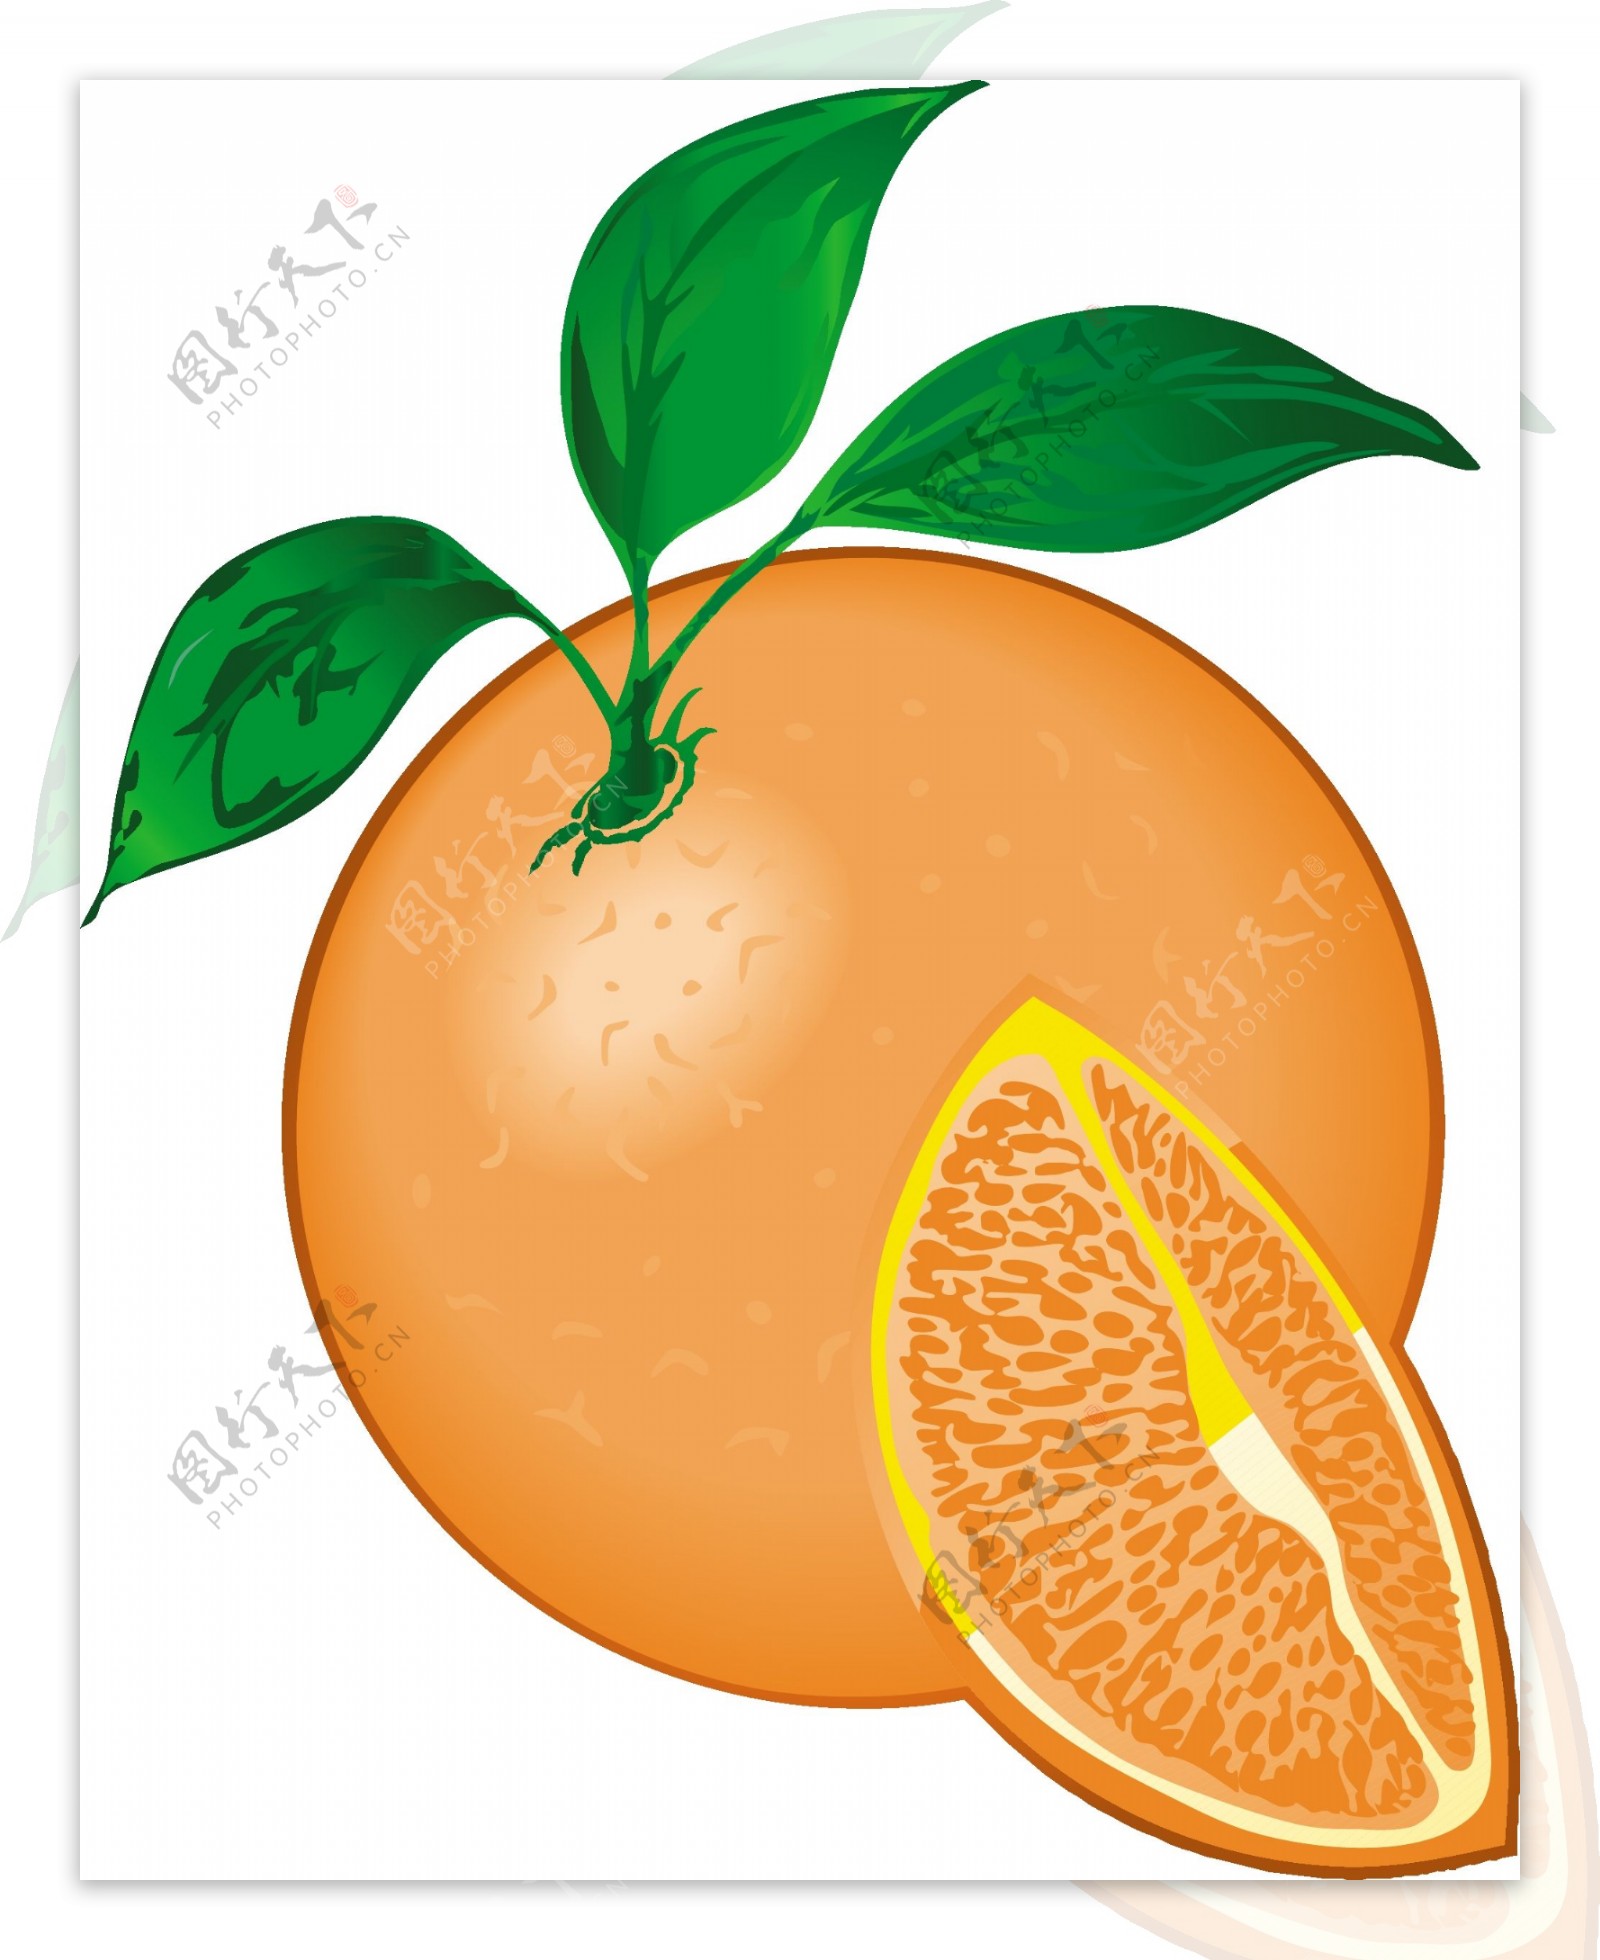 柑橘类水果5